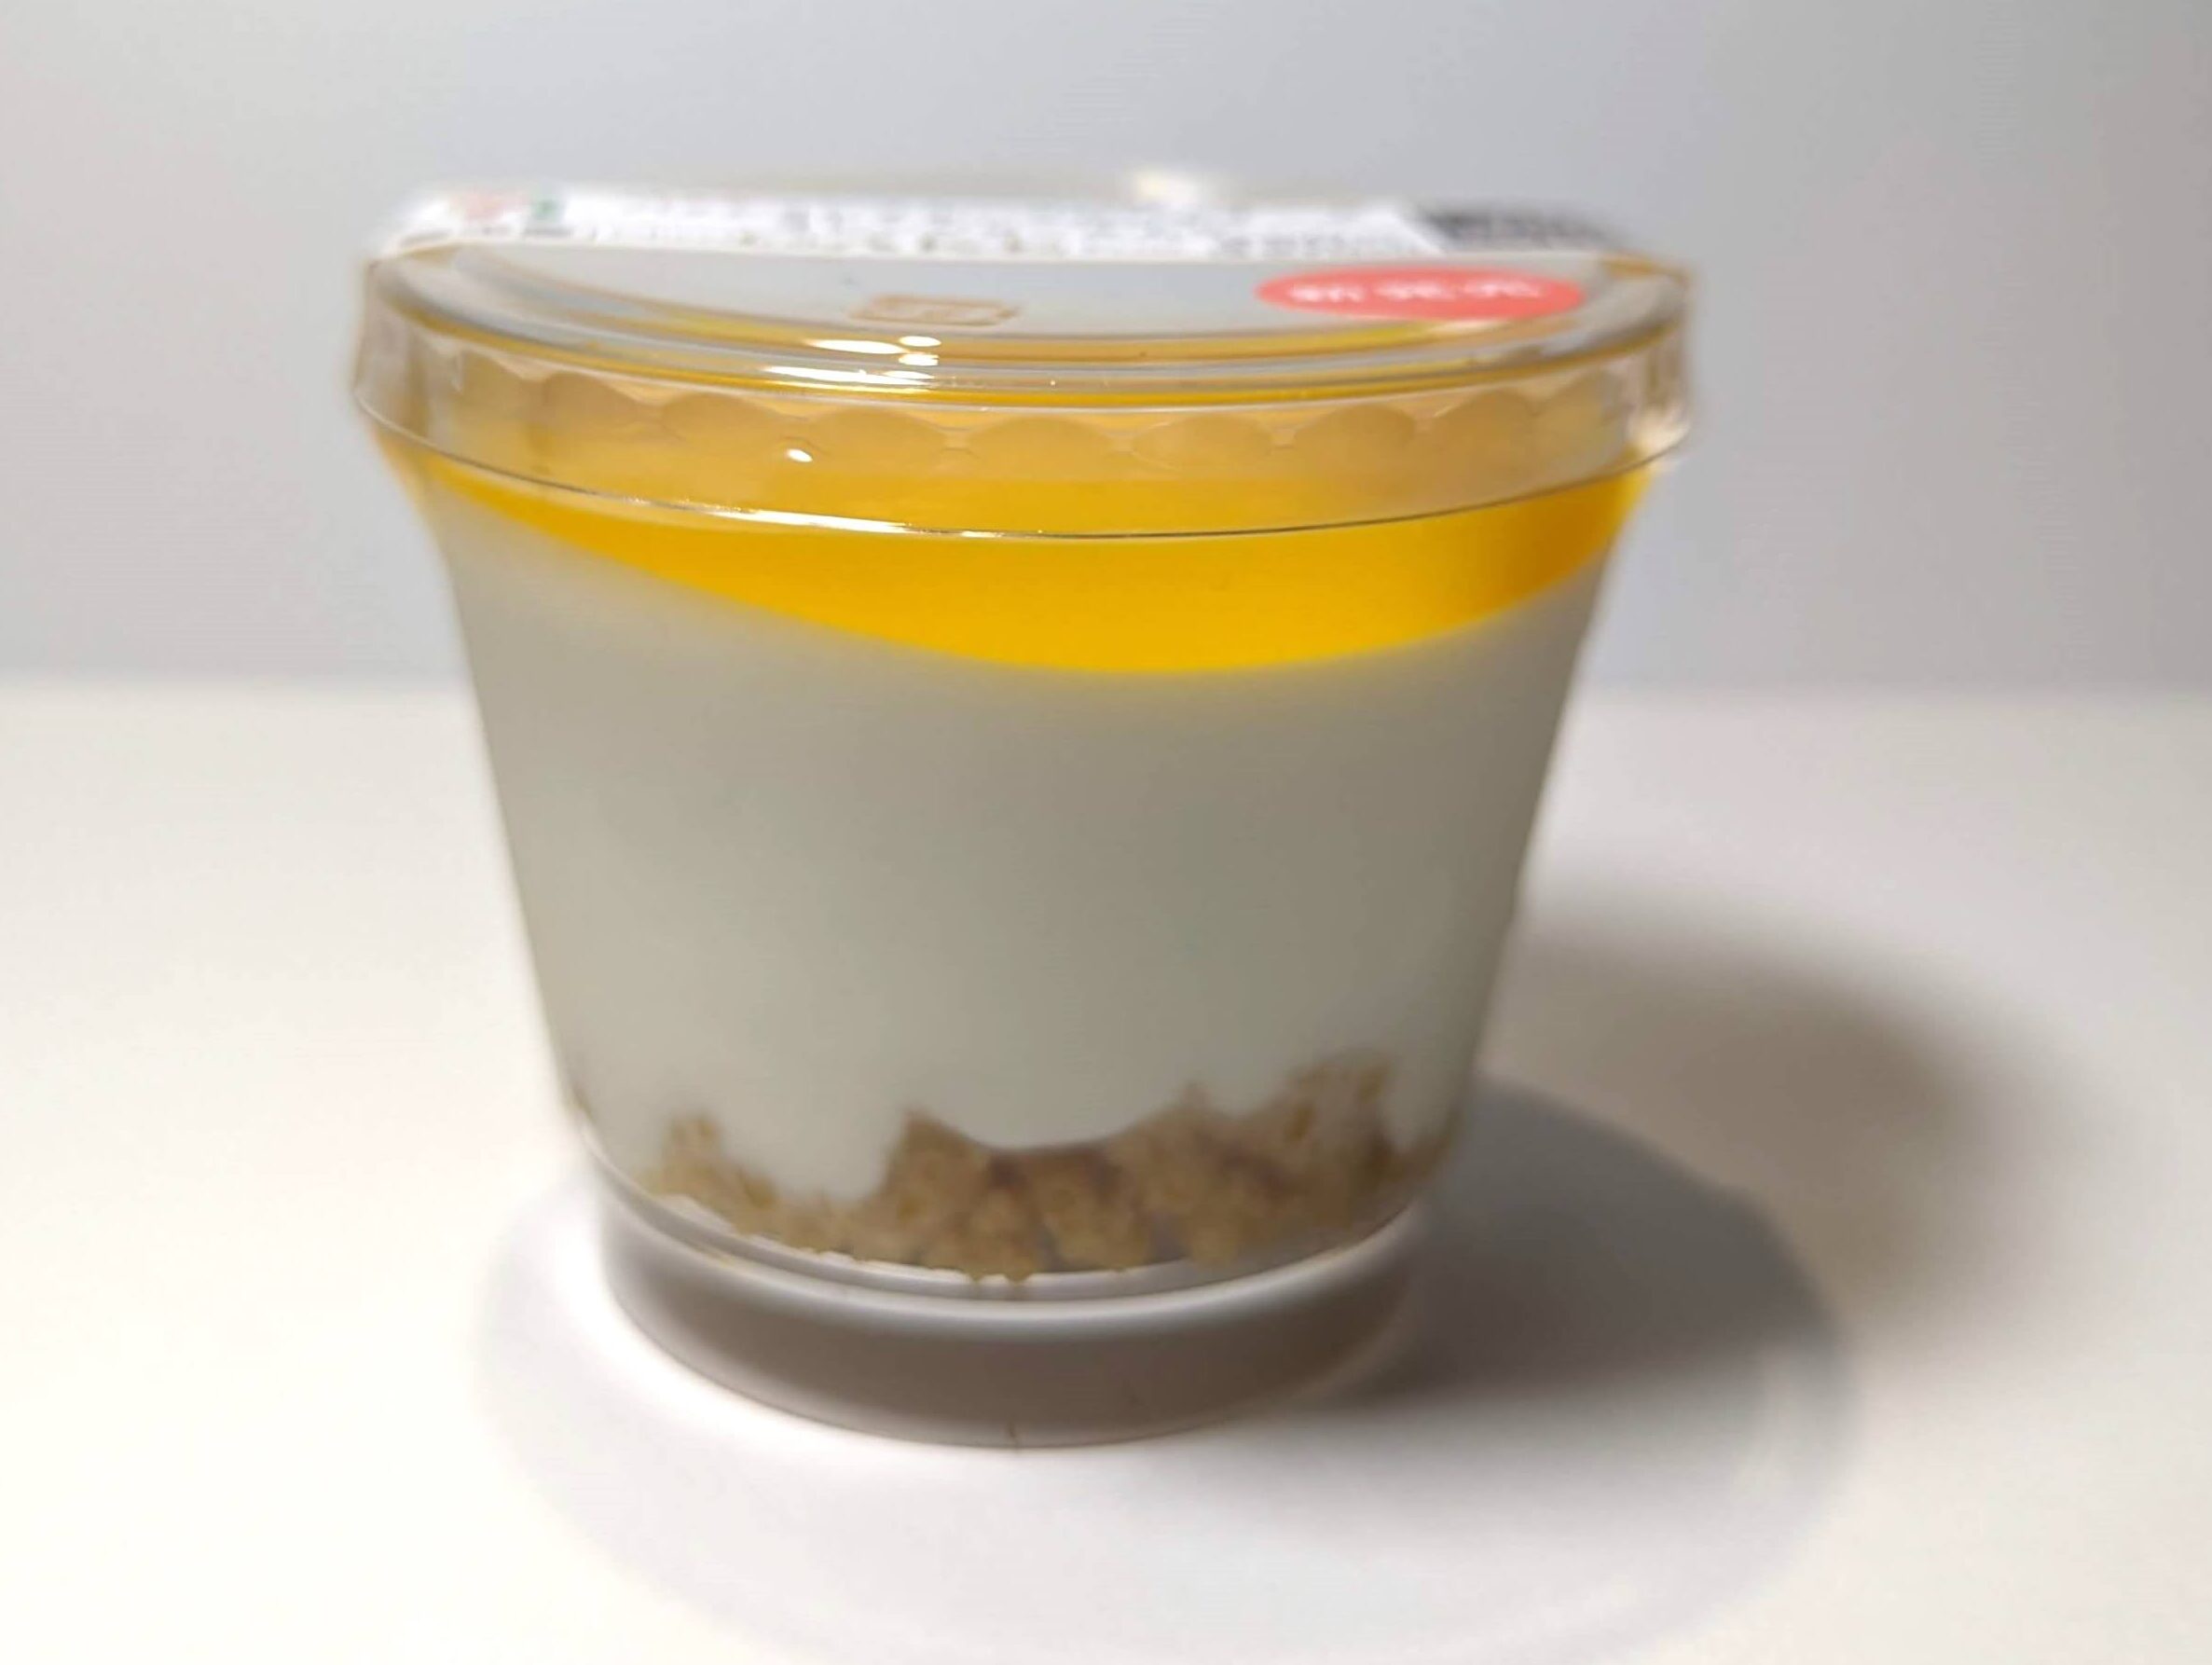 セブンイレブン・パッションフルーツのレアチーズ オレンジピール入り (4)